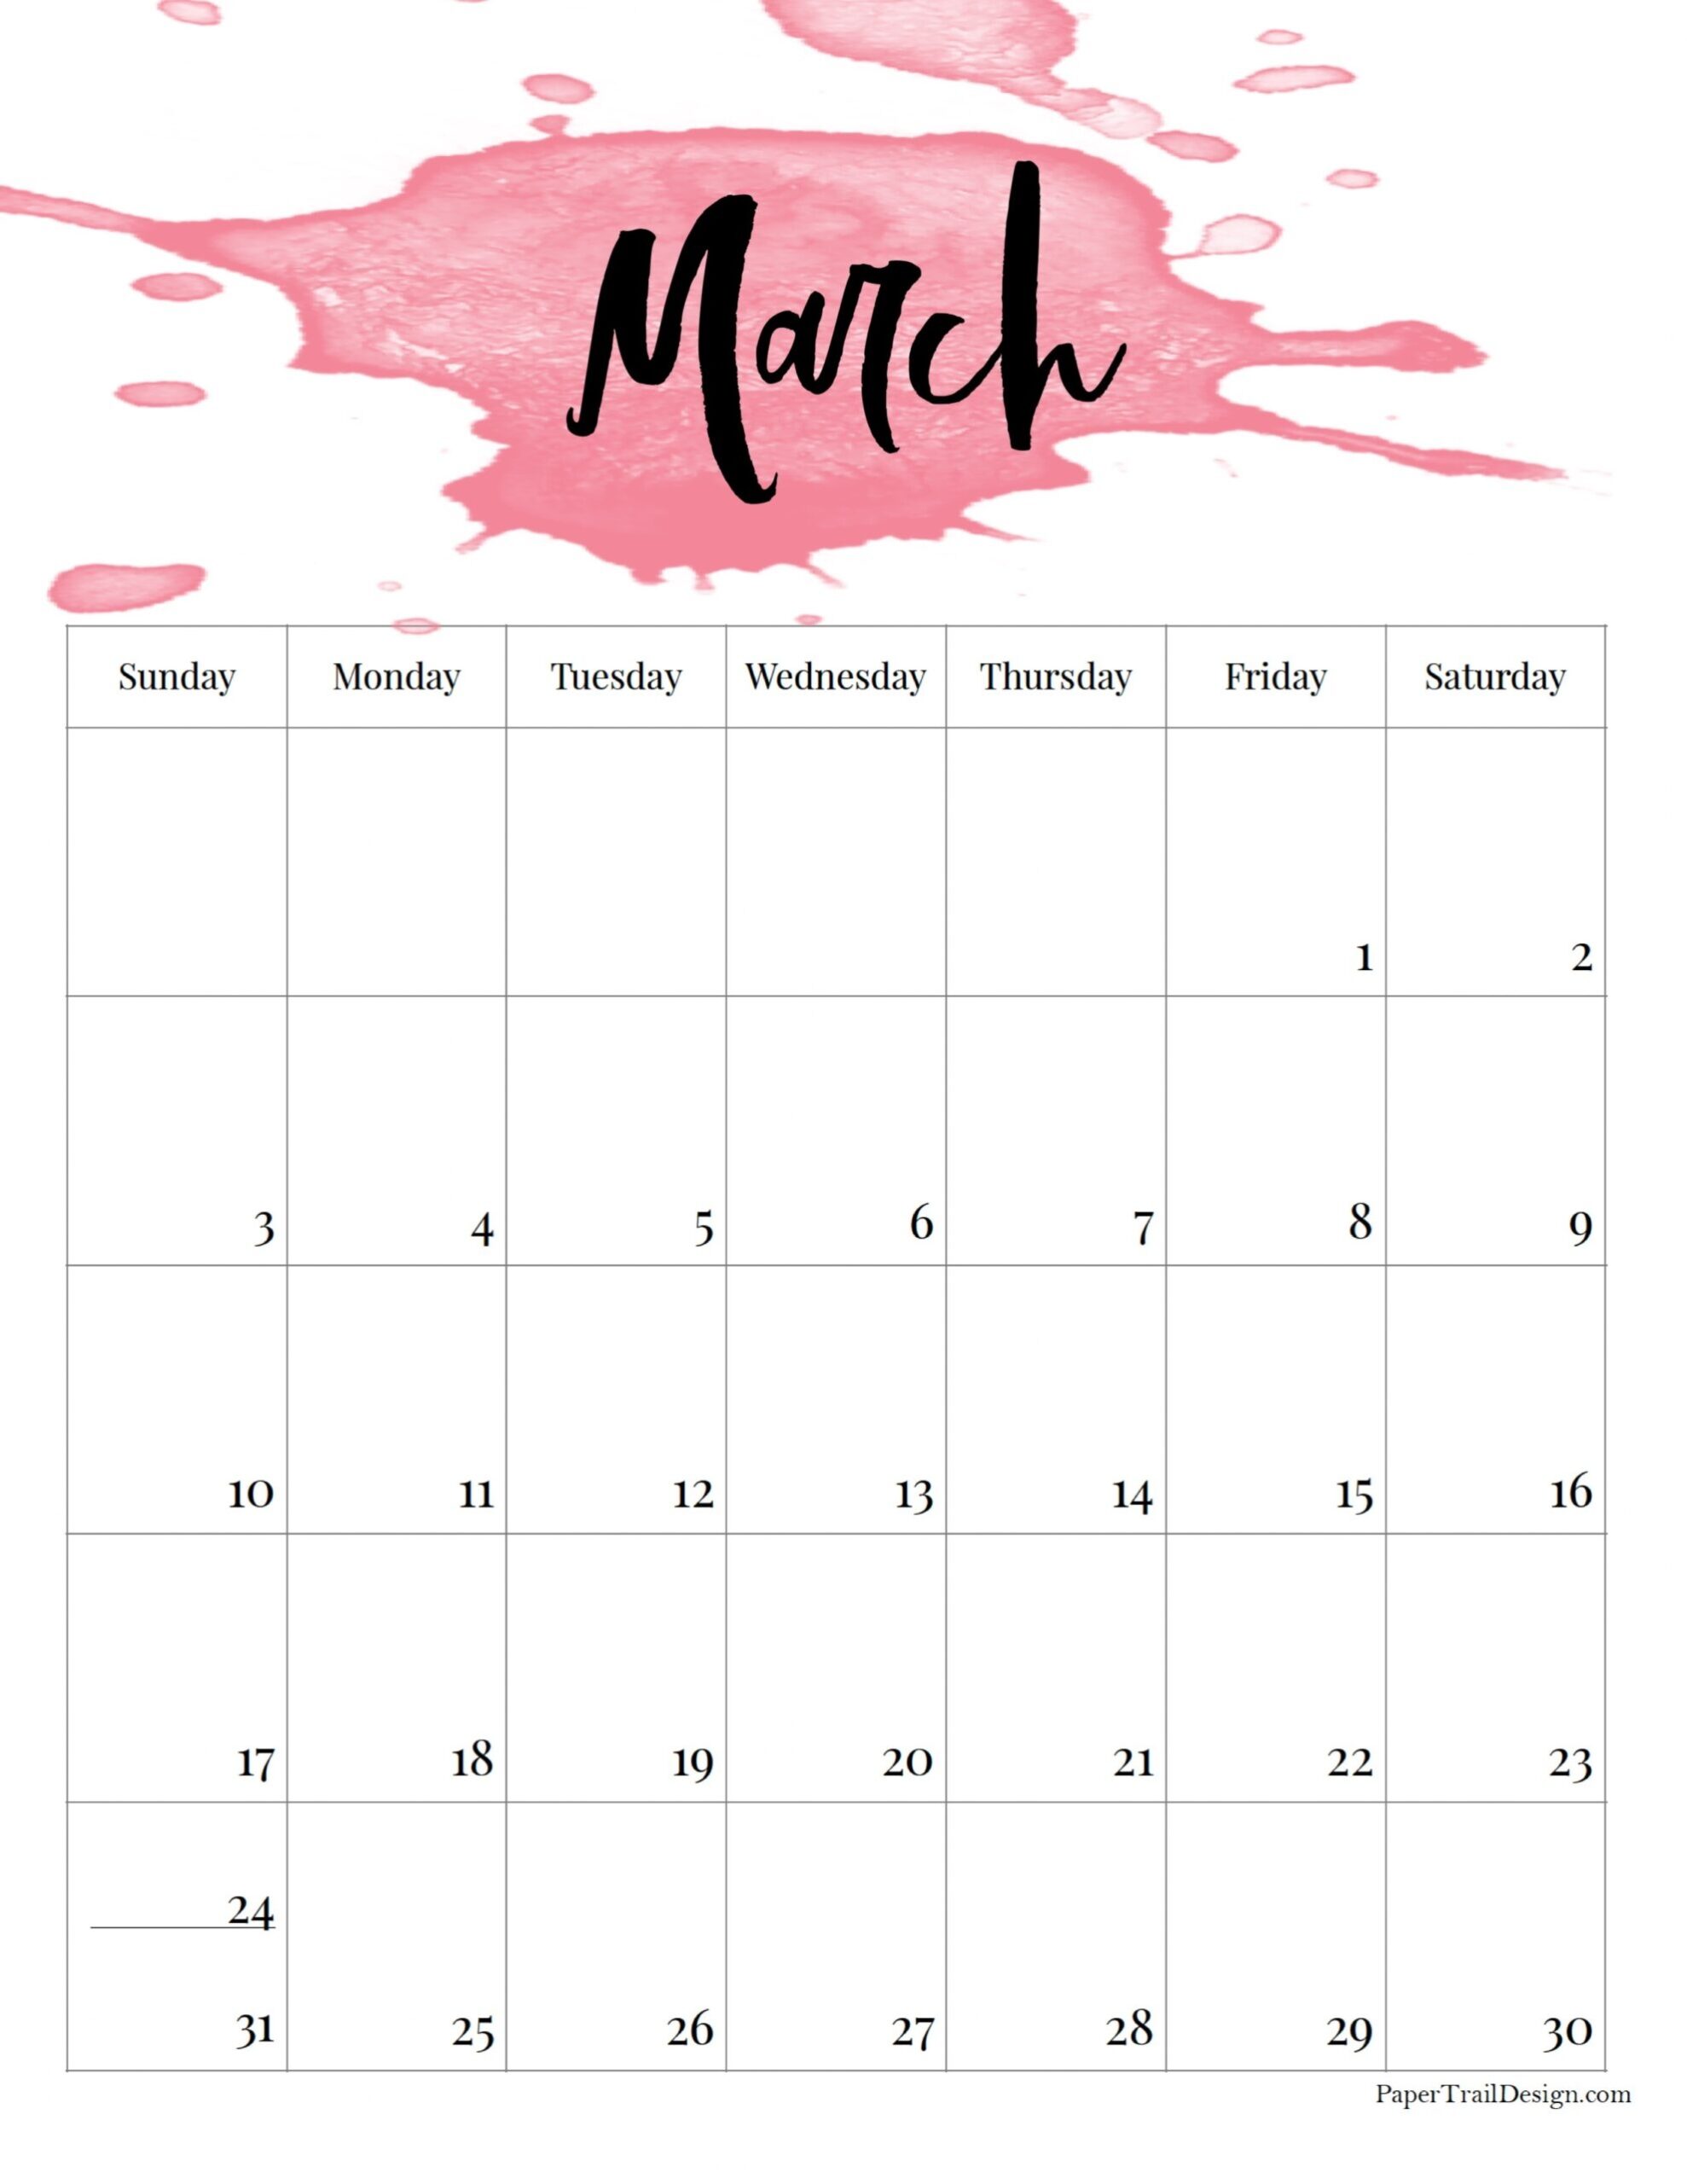 2024 Printable Calendar – Watercolor - Paper Trail Design in Free Printable Calendar 2024 Watercolor